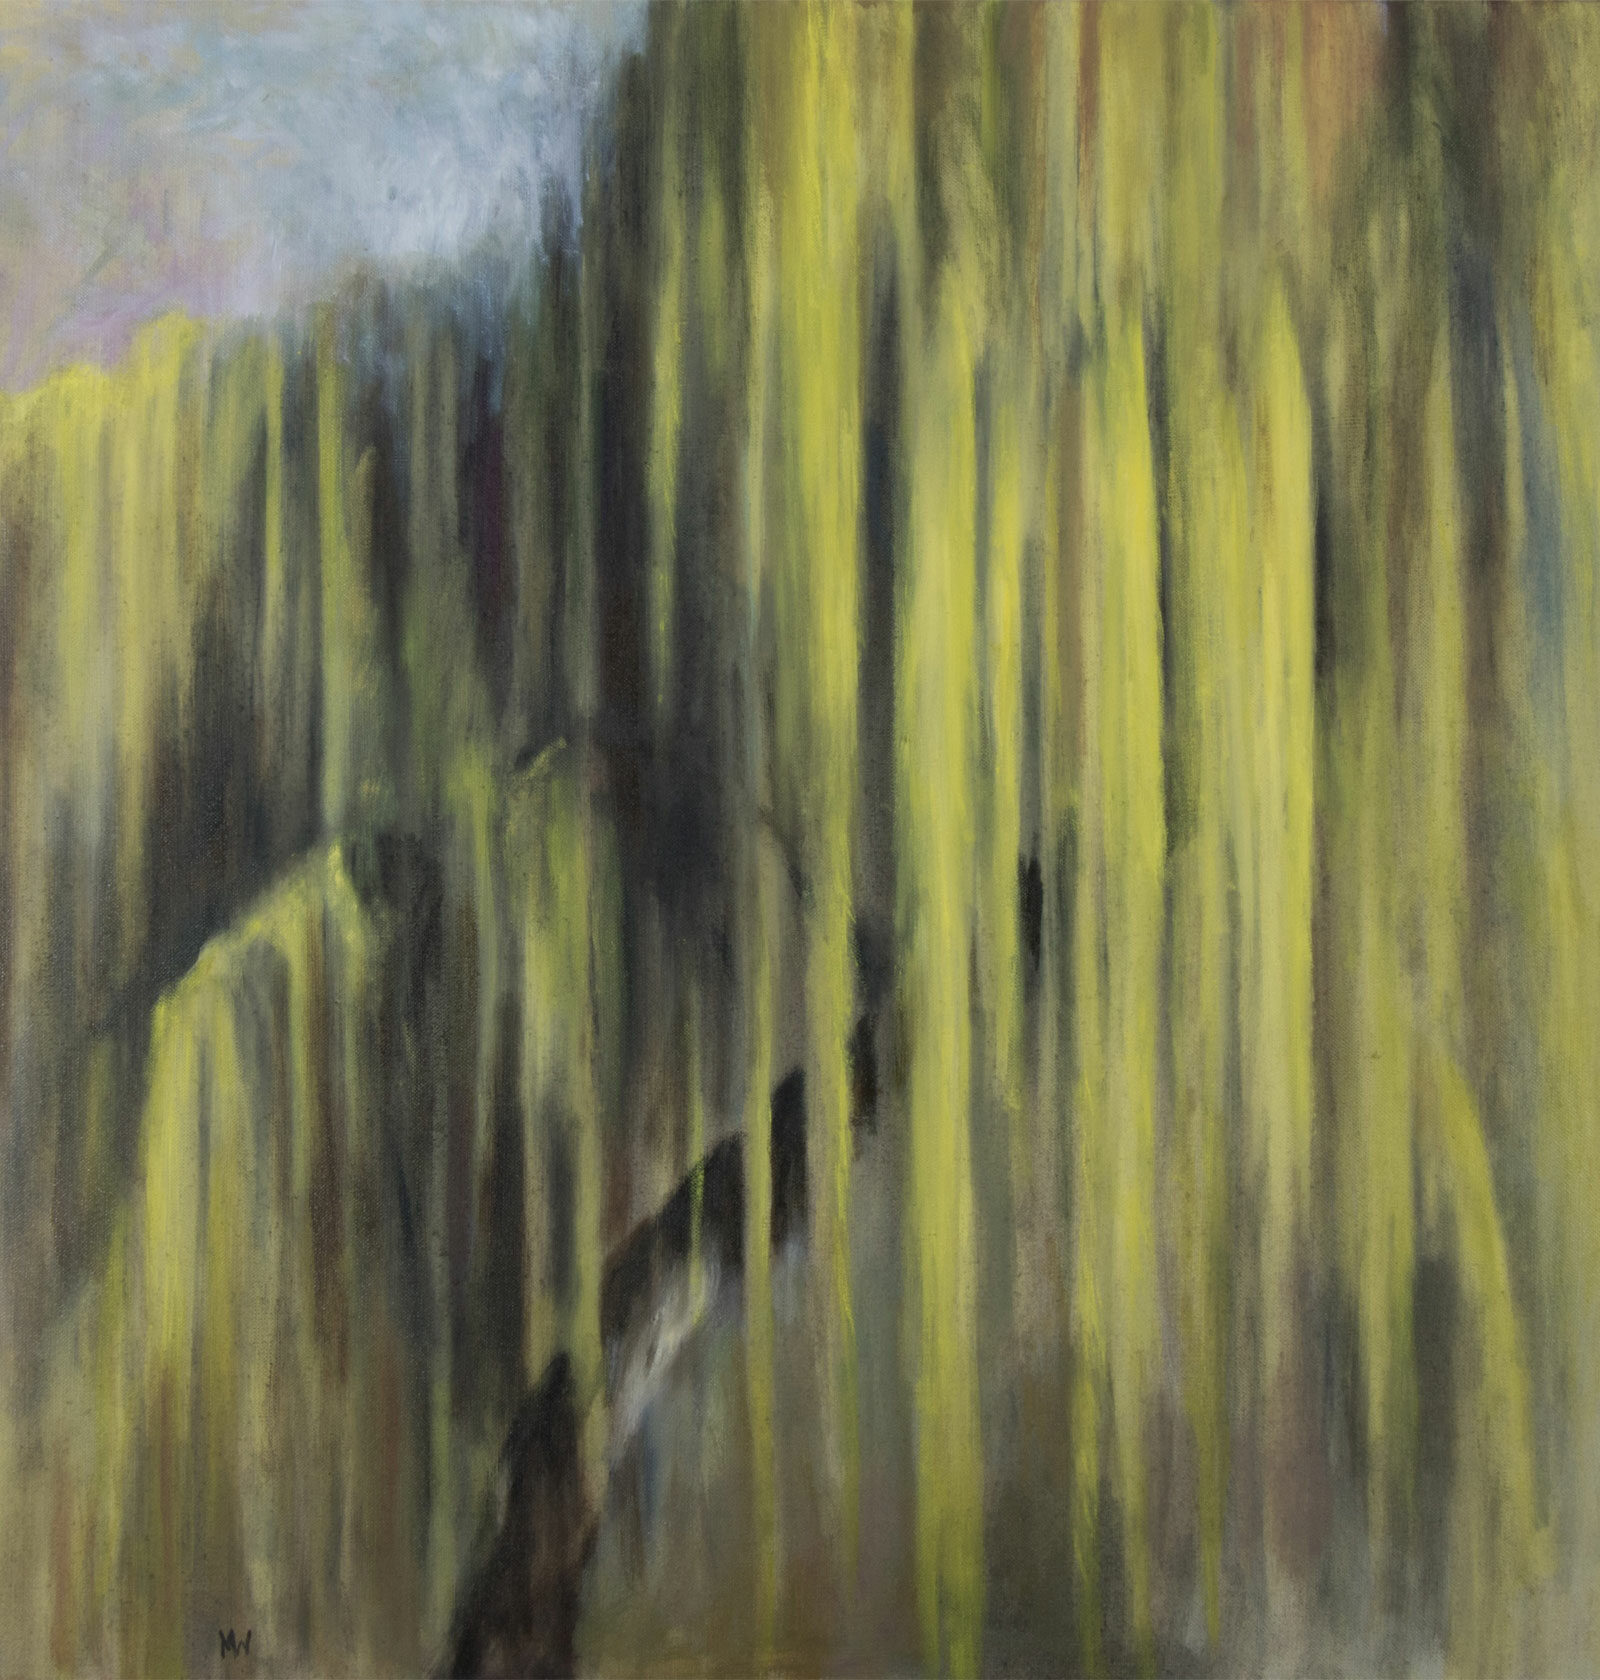 Portrait de saule pleureur,- Huile sur toile,- 80 x 80 cm